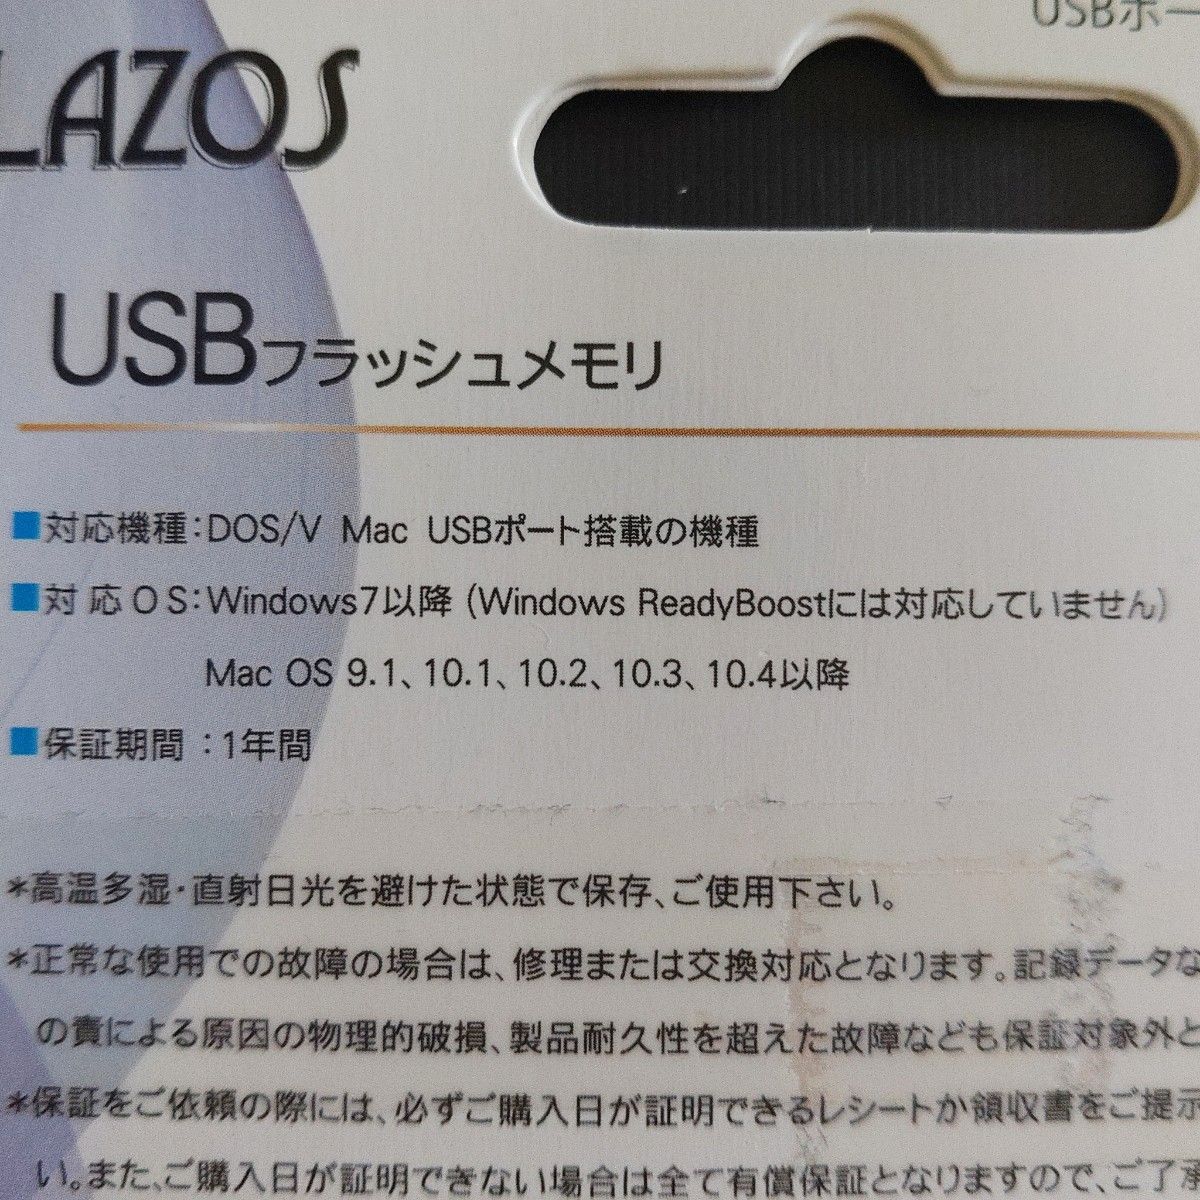 LAZOS USB2.0 フラッシュメモリ 32GB 2個セット 型番L-U32